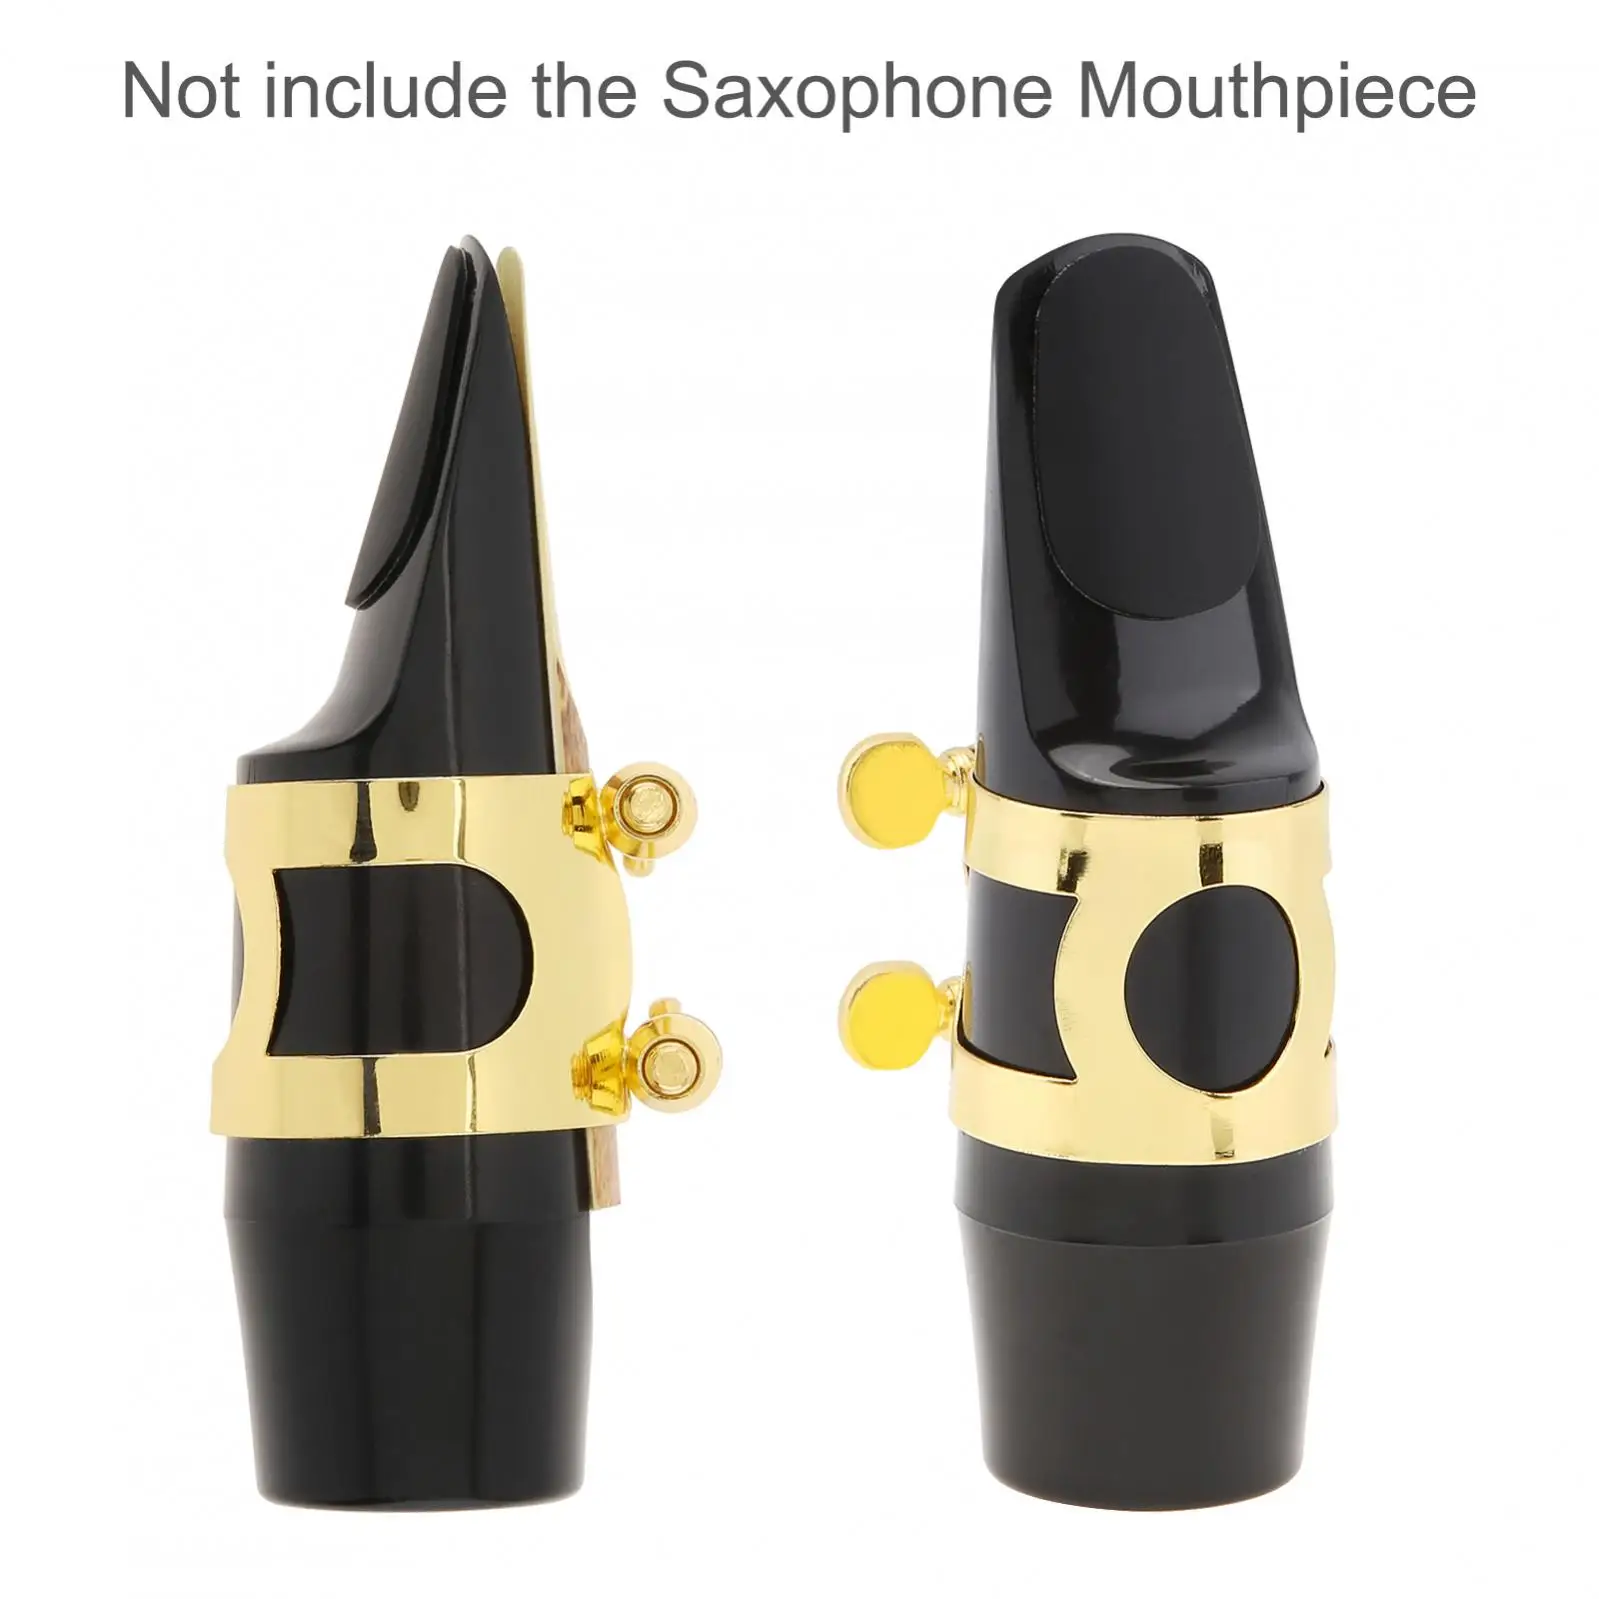 64 szt. Standardowe 0.8mm silikonowe saksofonowe poduszki na saksofon altowy, saksofon tenorowy/klarnet, ustnik do saksofonu podkładki do łatek